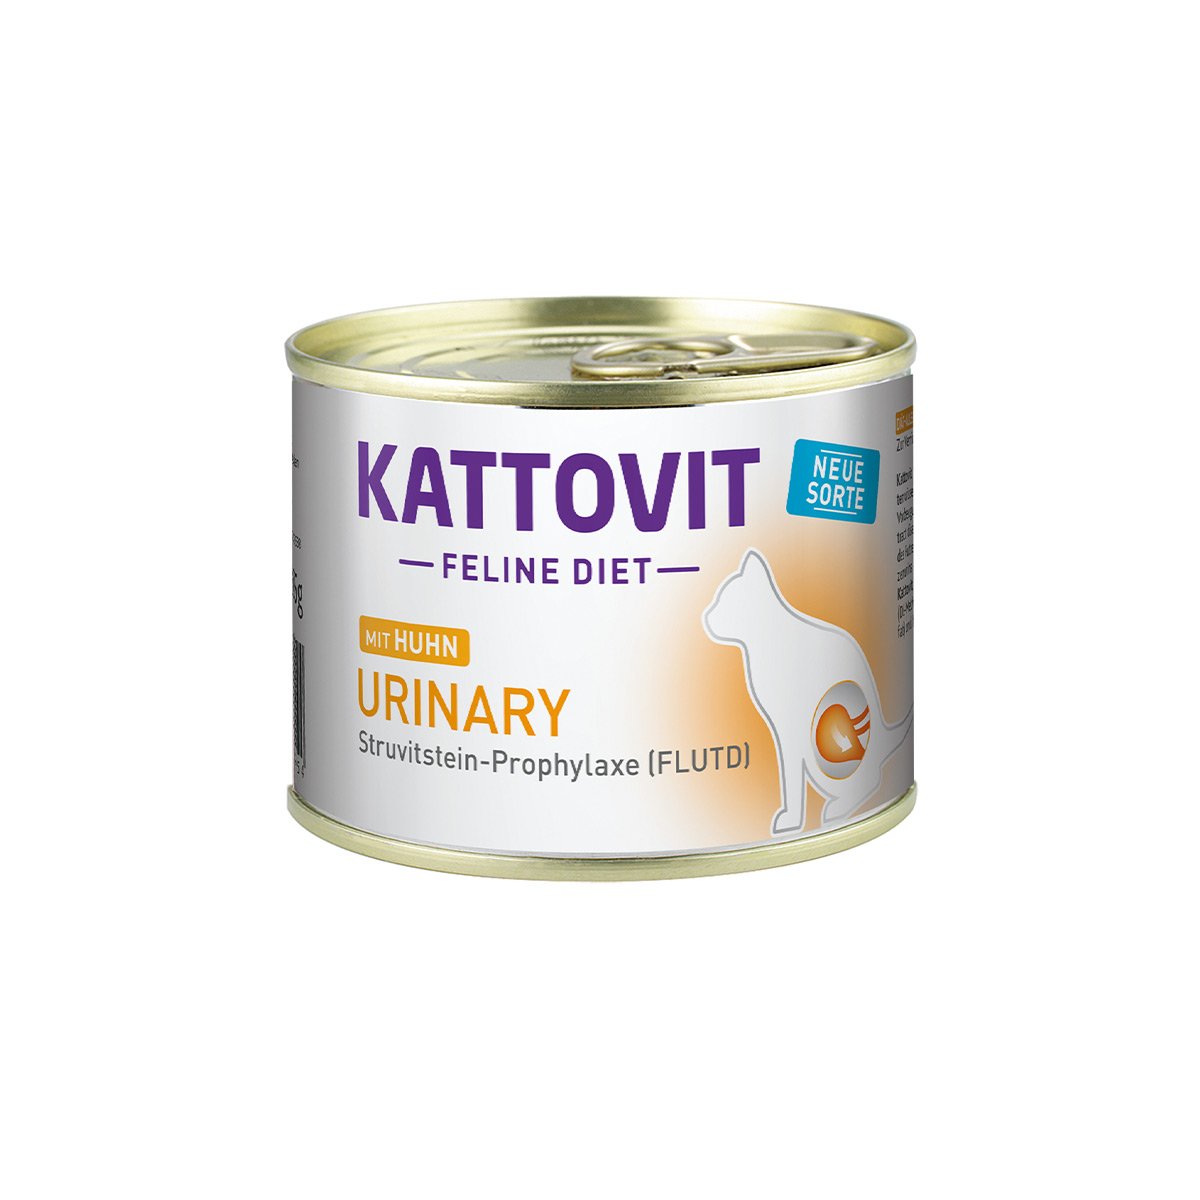 Kattovit Feline Diet Urinary Huhn 12x185g von Kattovit